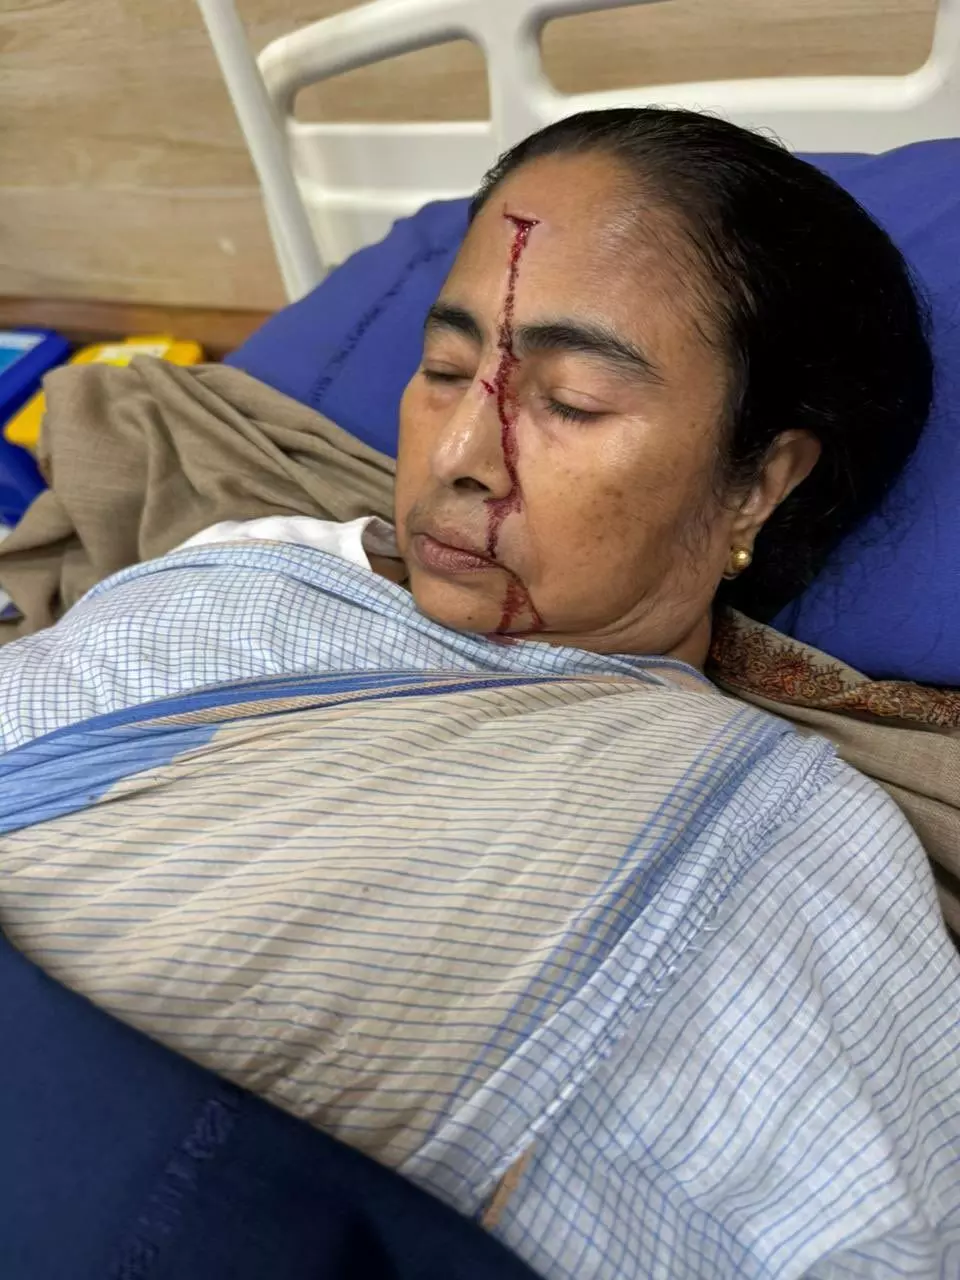 बंगाल की मुख्यमंत्री MamataBanerjee घायल हुईं, सिर पर लगी गंभीर चोट